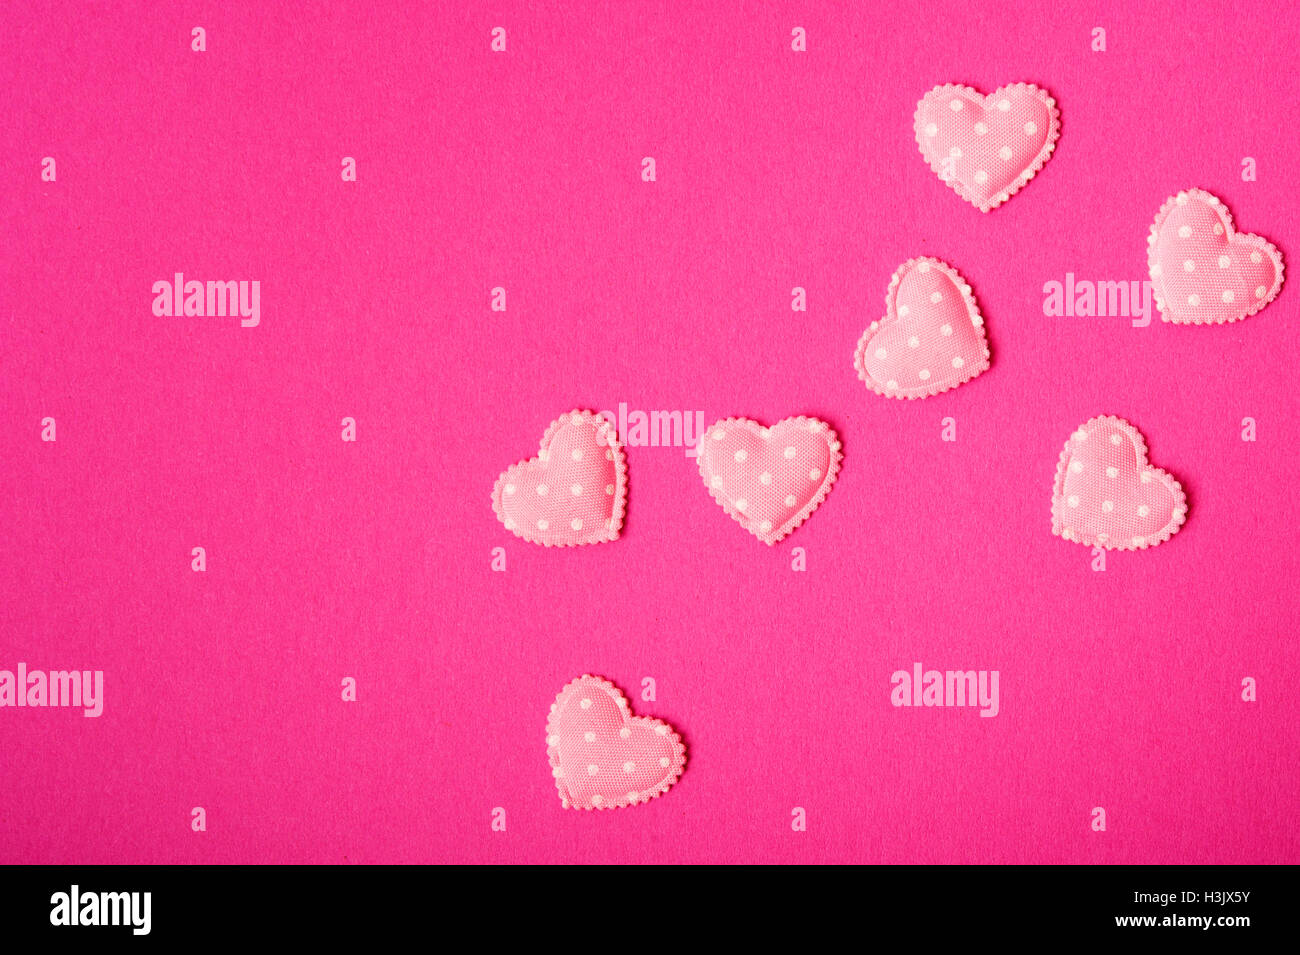 hearts confetti, love concept Stock Photo